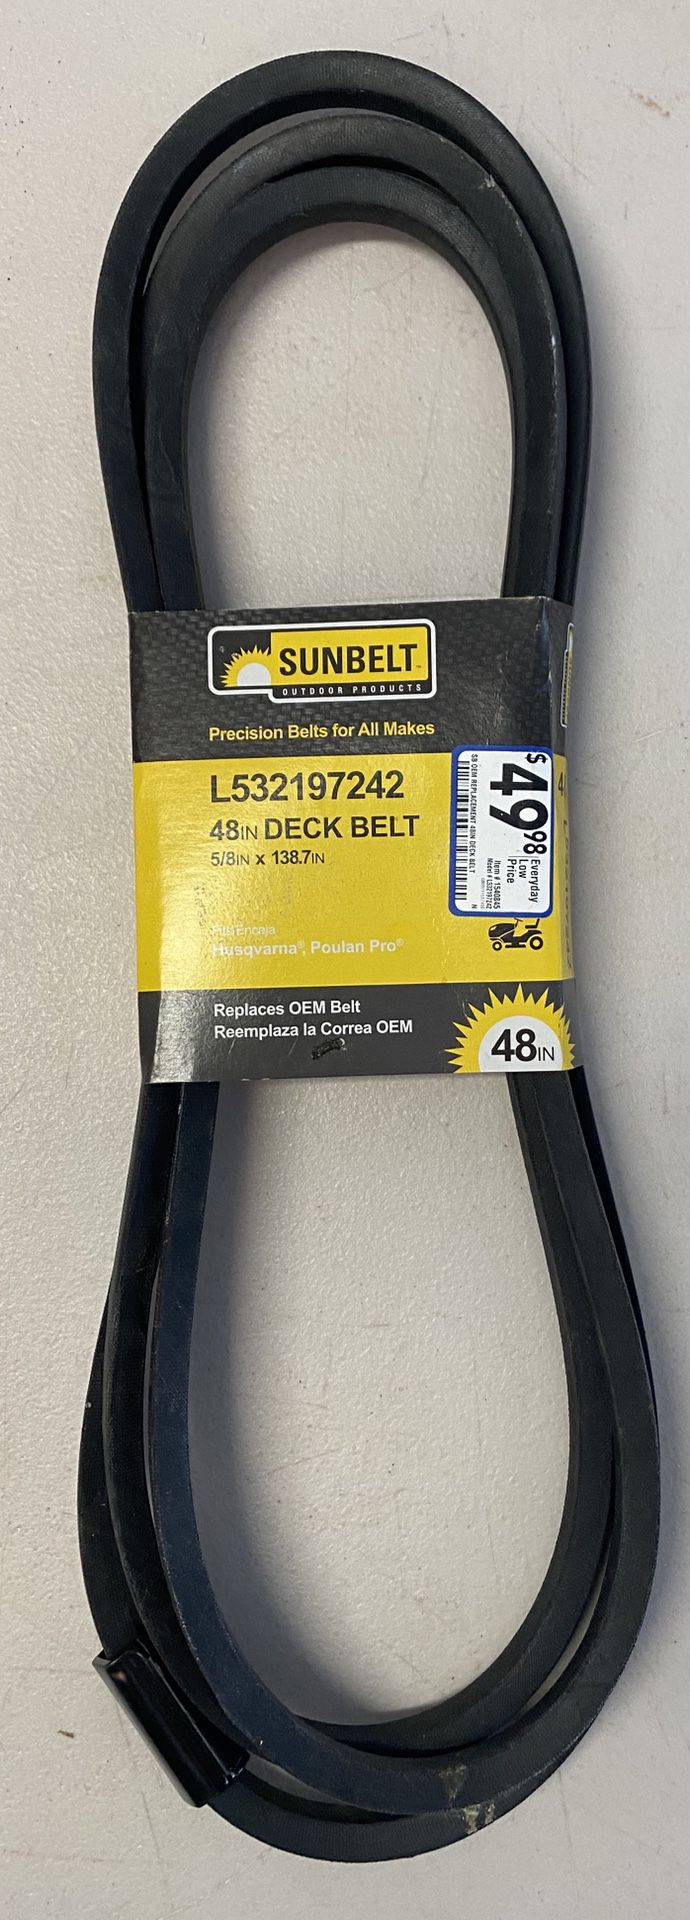 Sunbelt L-532197242 48-in Deck Belt for Riding Mower/Tractors (5/8-in W x 138.7-in L)